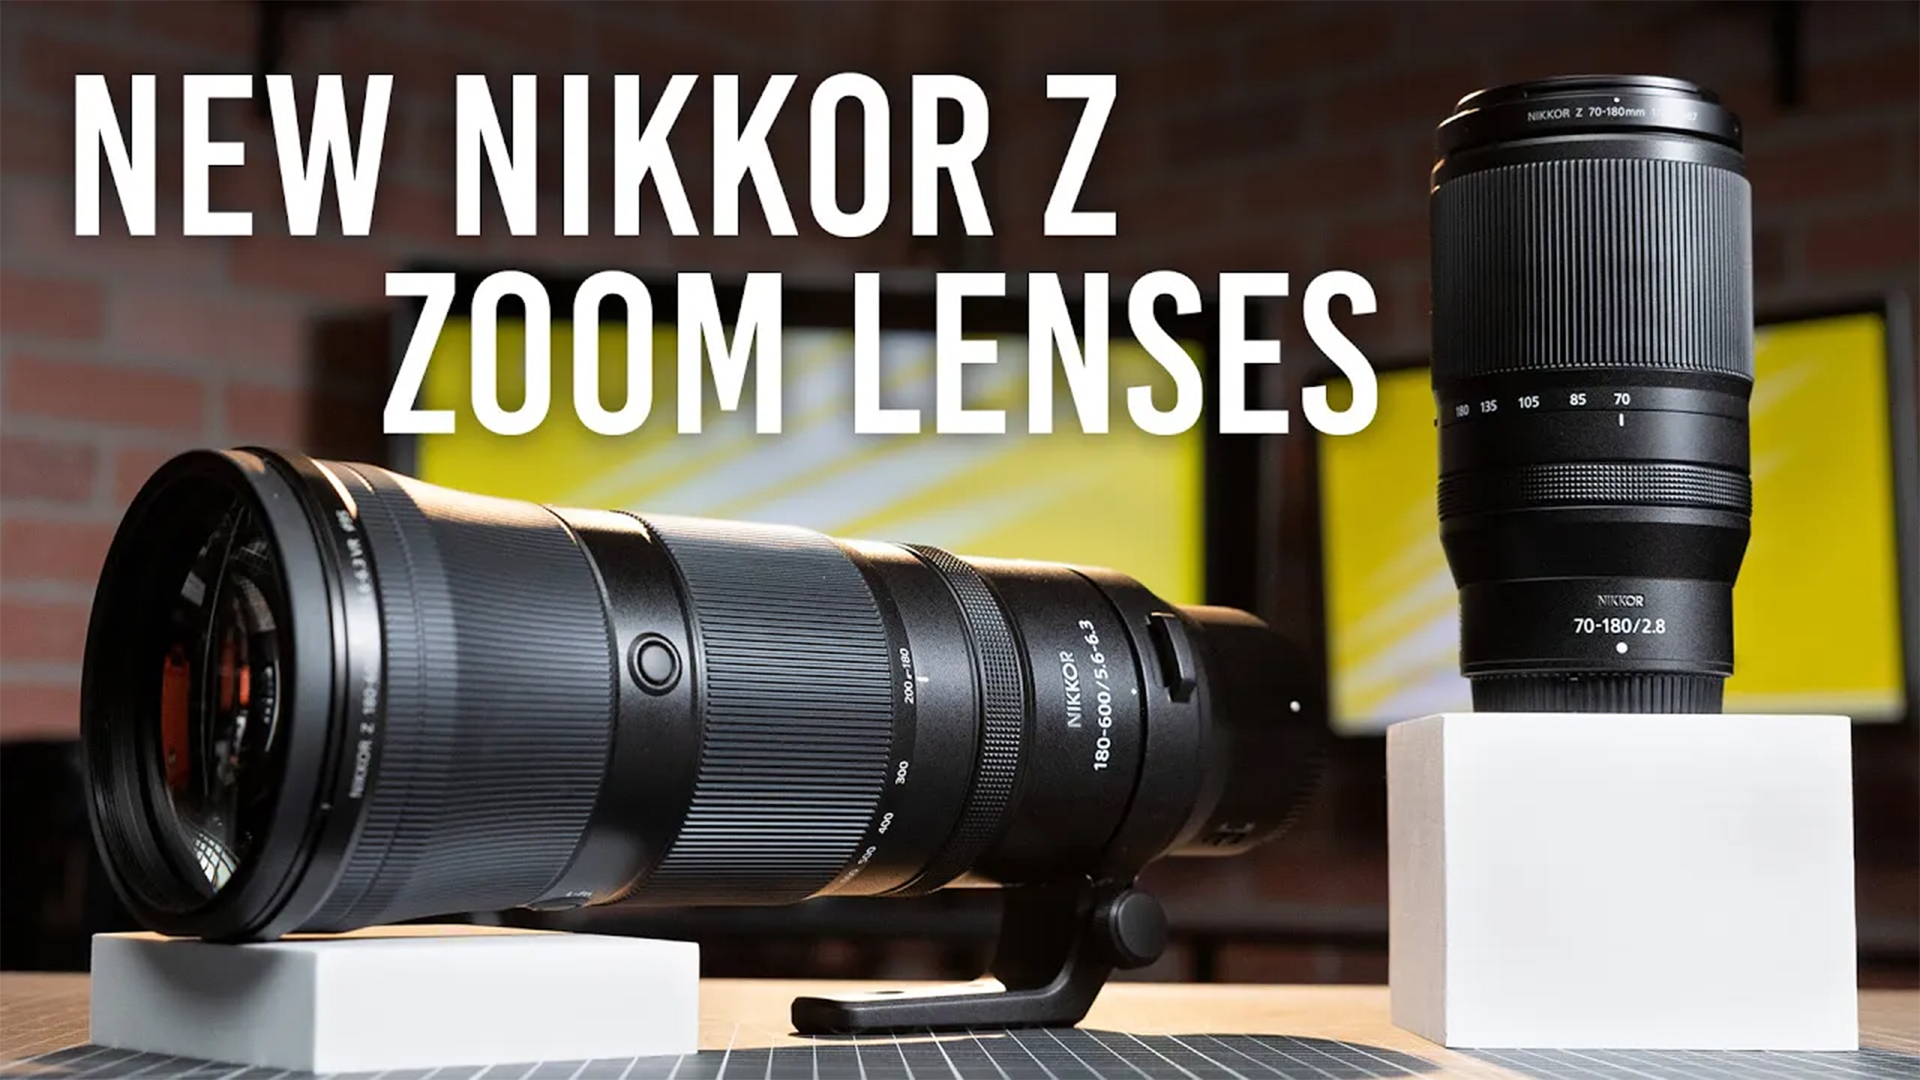 Nikkor Z 70-180mm f/2.8 and Nikkor Z 180-600mm f/5.6-6.3 VR lenses 